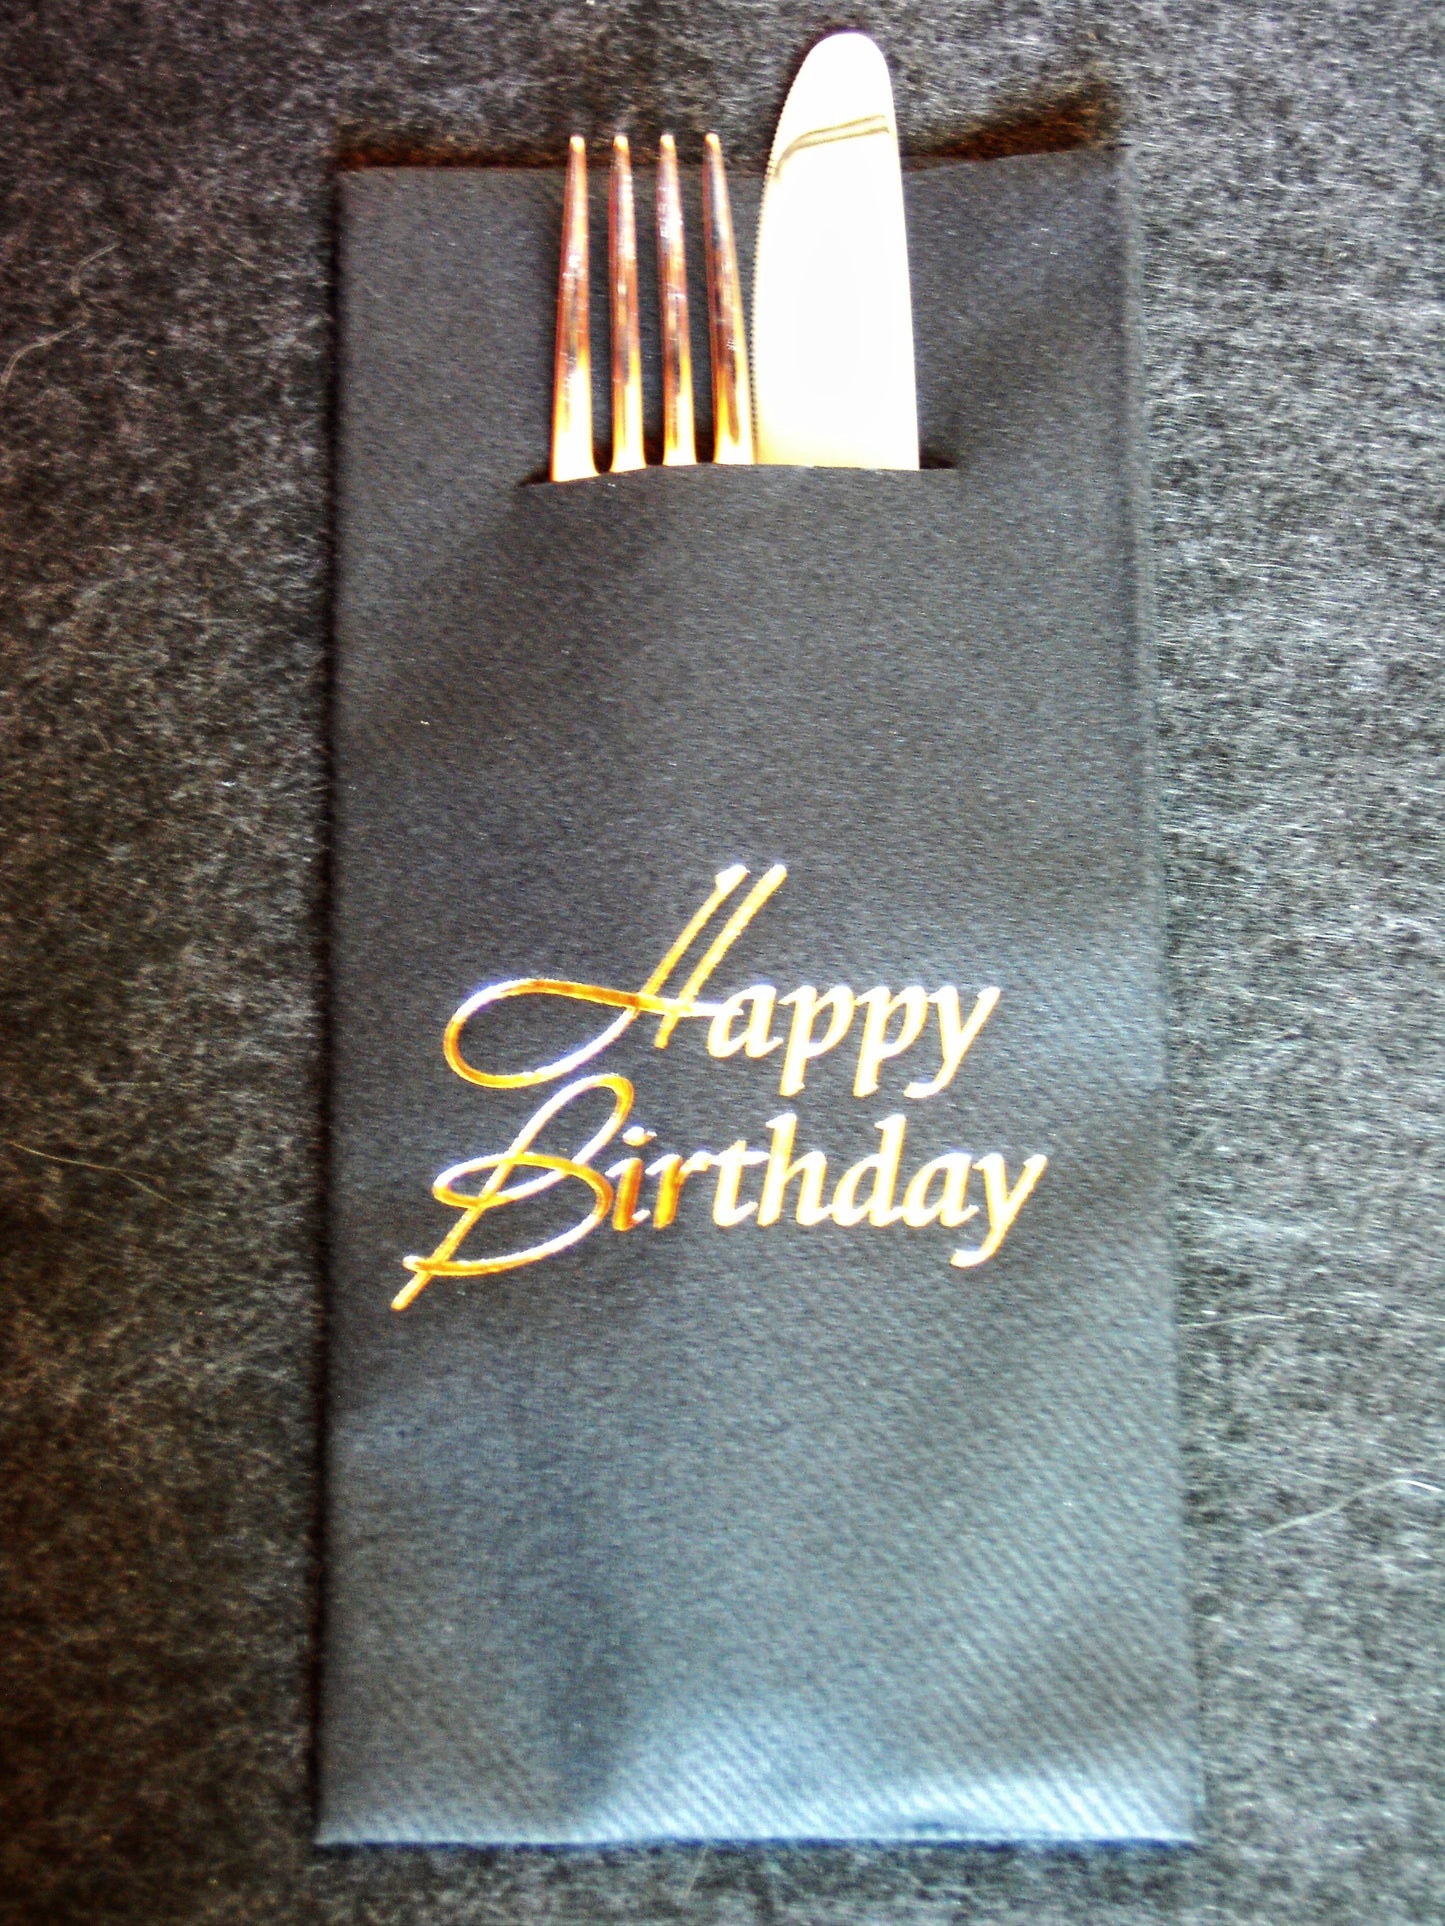 Pocket-Napkins "Happy Birthday"